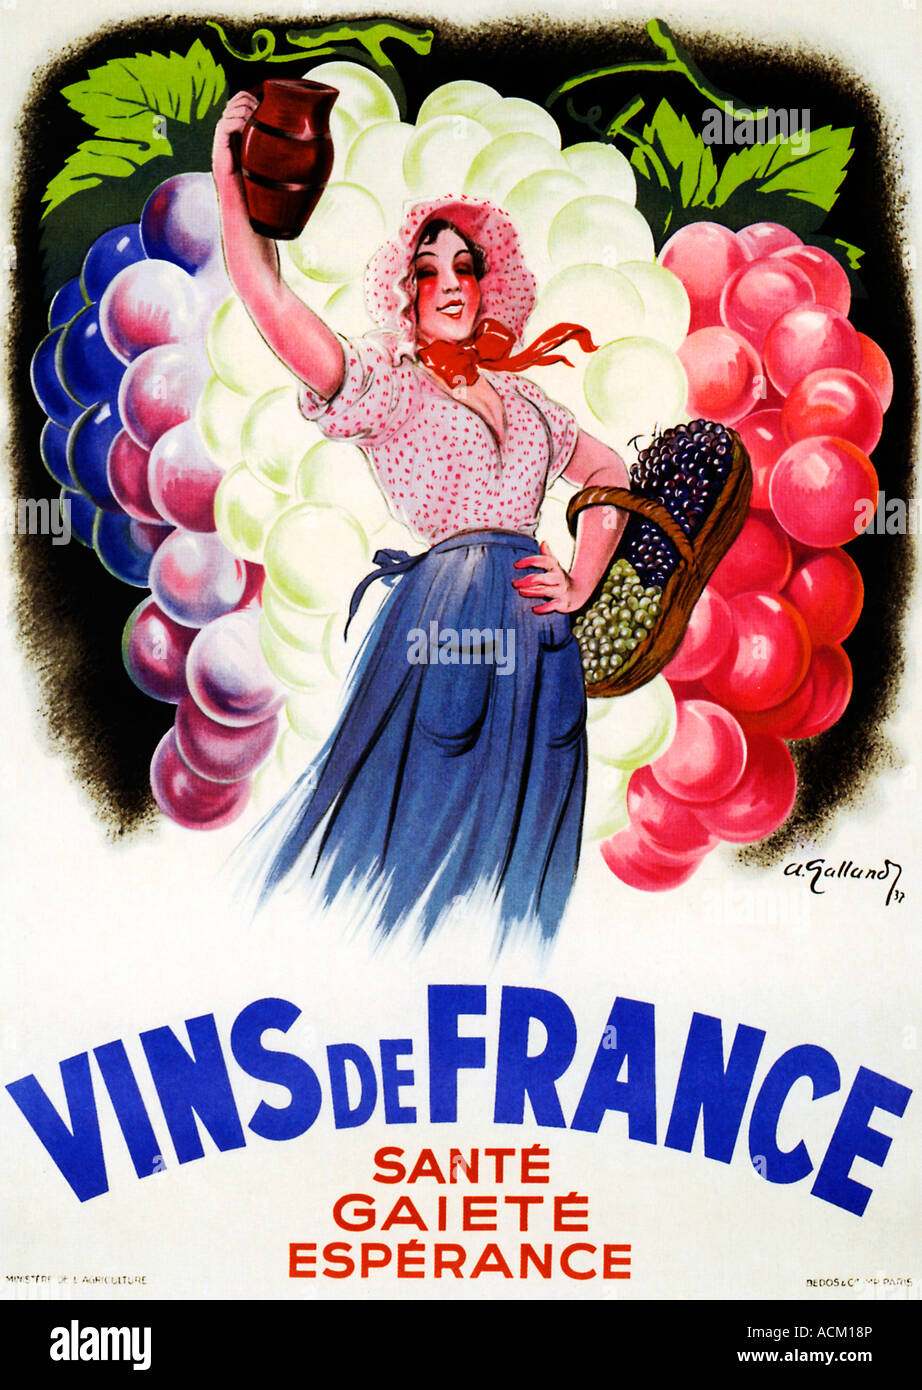 Vins de France 1937 affiche pour les joies de vin français réunissant l'imbiber le rire et l'espoir de la santé Banque D'Images